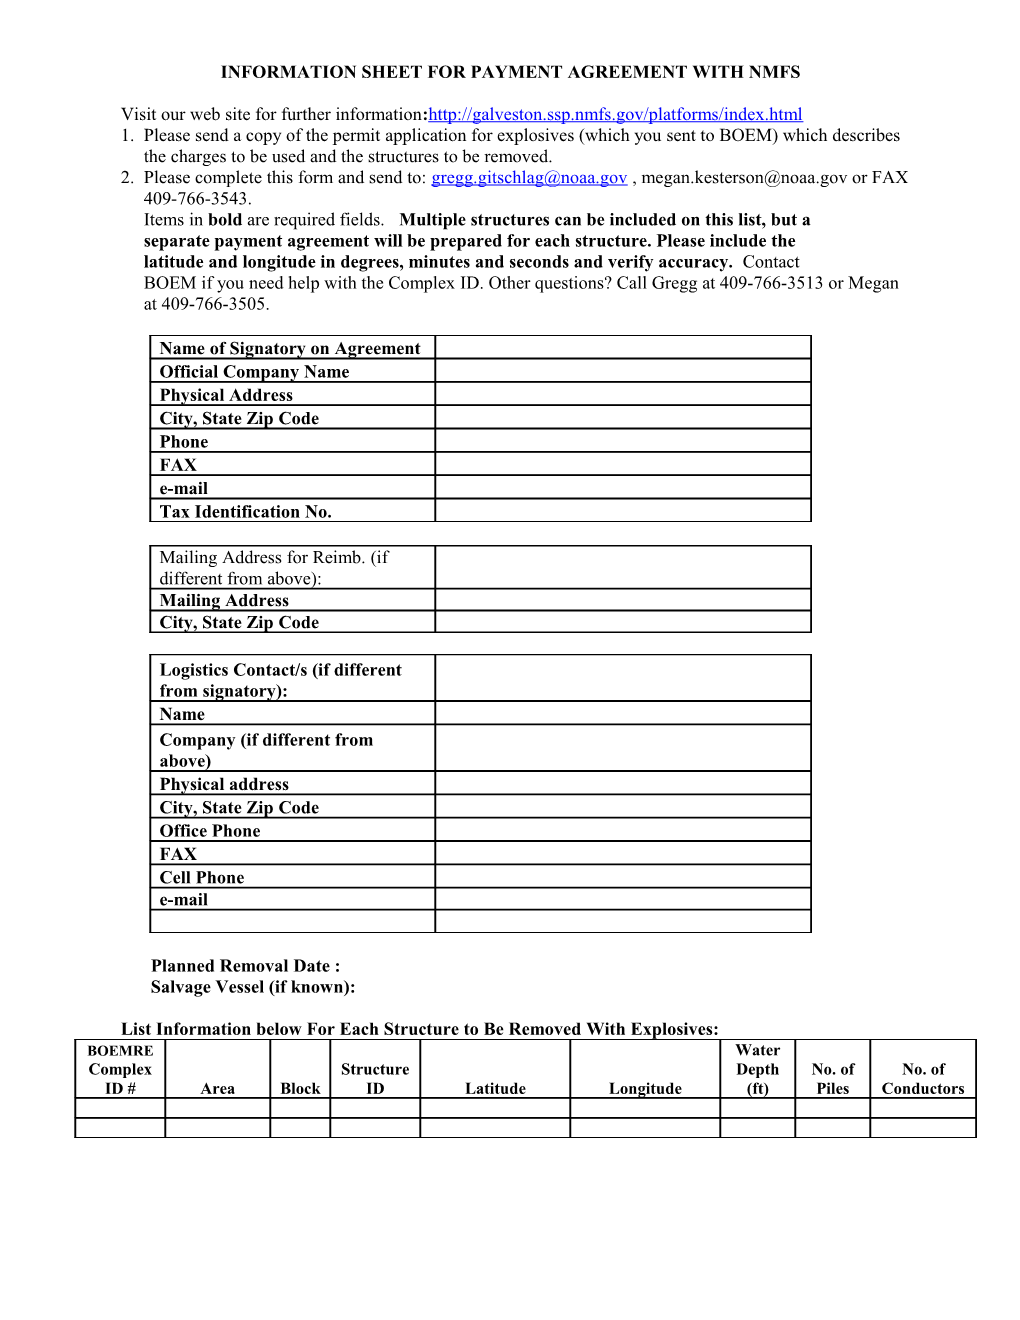 Information Sheet for Reimbursable Agreement